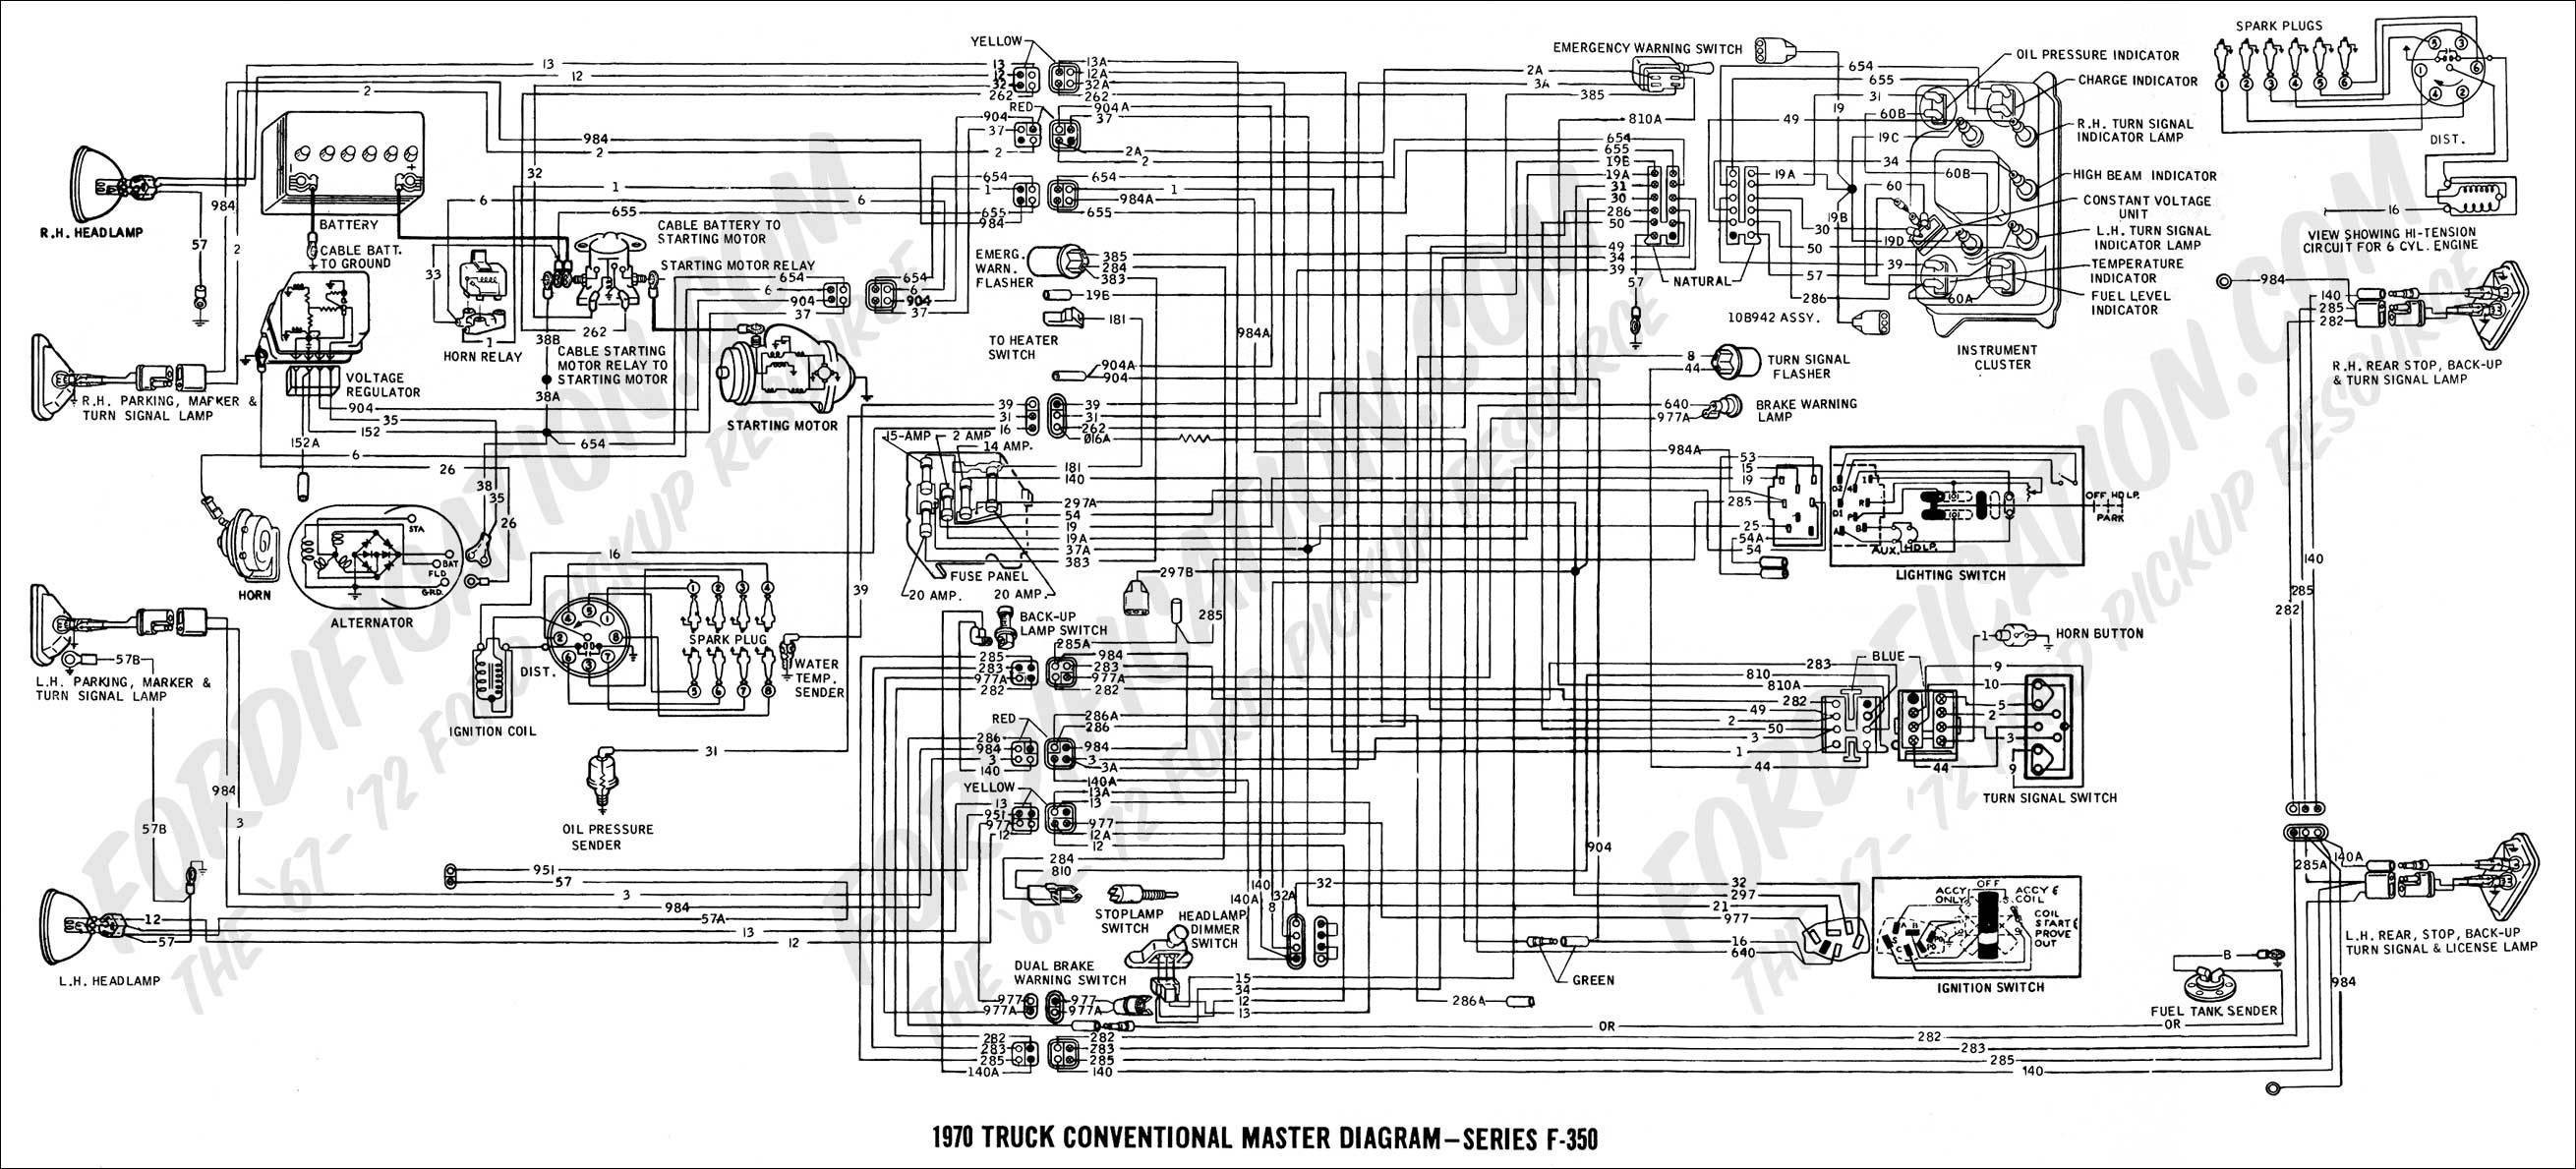 Car Alternator Circuit Diagram ford L8000 Alternator Wiring Wiring Diagram toolbox Of Car Alternator Circuit Diagram